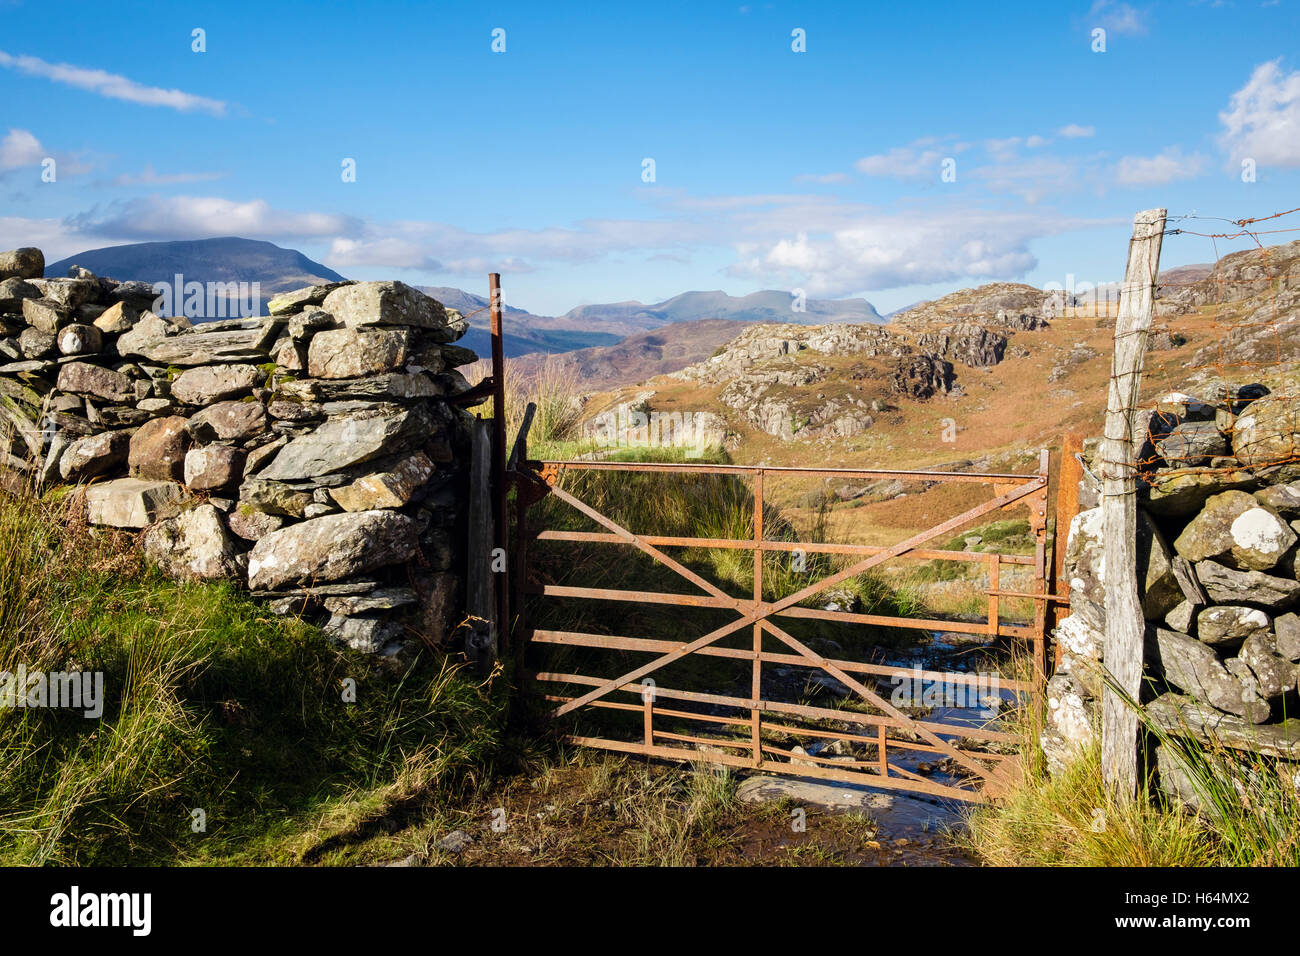 Mur en pierre et porte rustique de ferme rouillée sur la piste de campagne avec Nantlle Ridge à distance dans le parc national de Snowdonia (Eryri). Gwynedd Nord du pays de Galles Royaume-Uni Banque D'Images